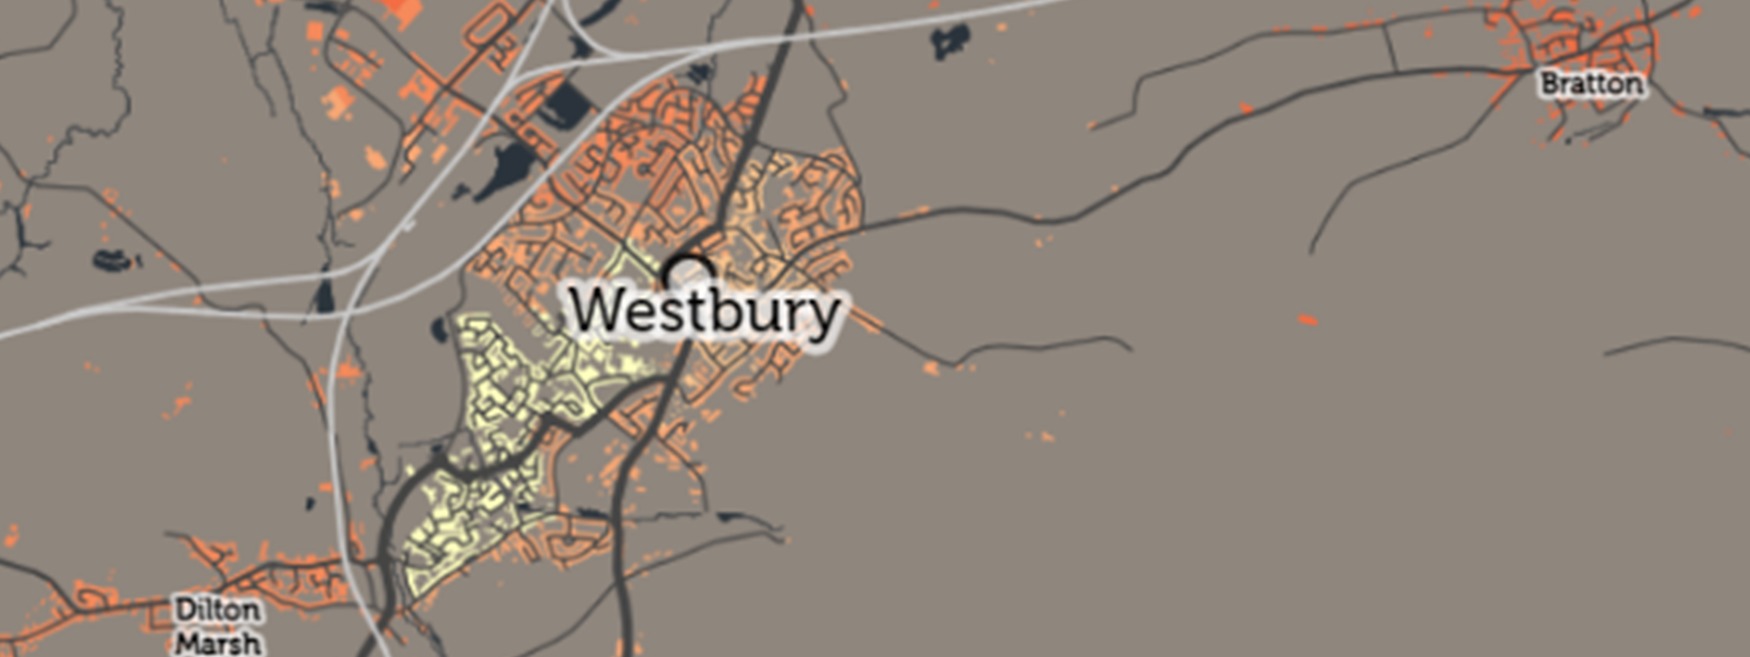 Westburys results